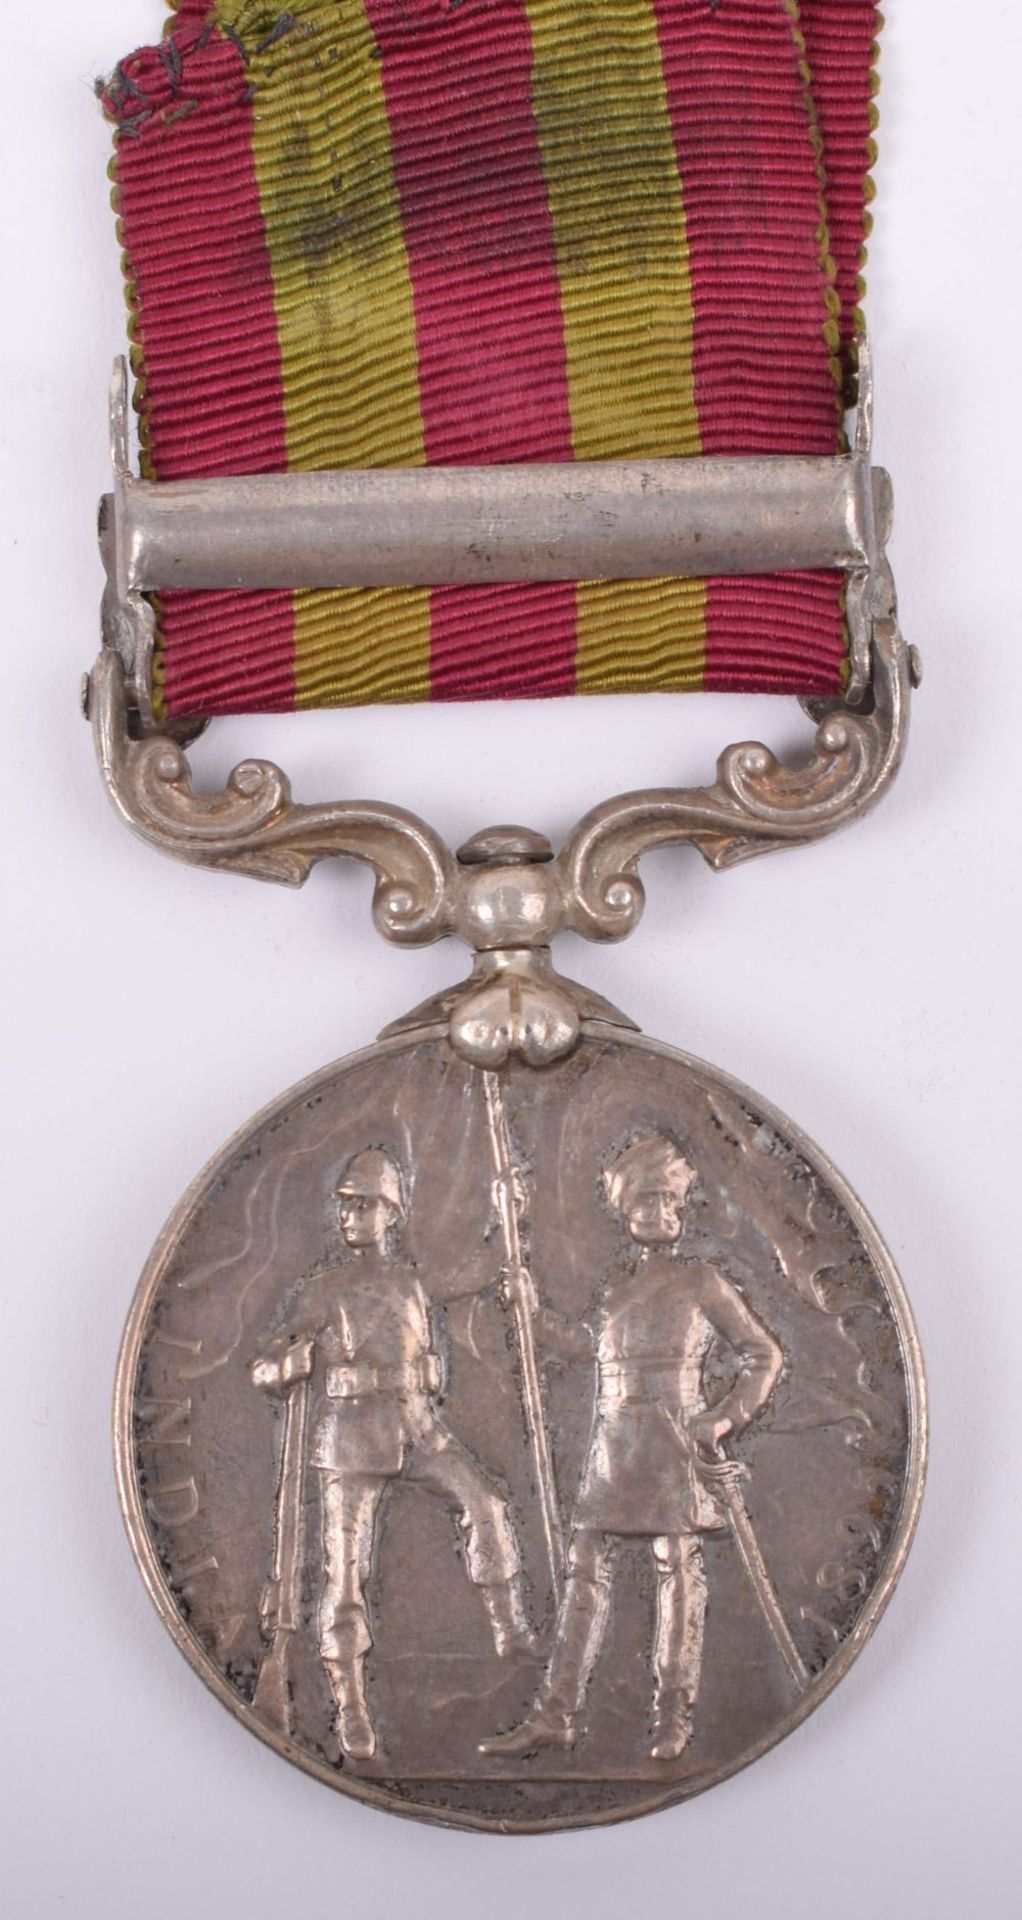 Indian General Service Medal 1895-1902 Argyll & Sutherland Highlanders - Image 4 of 6